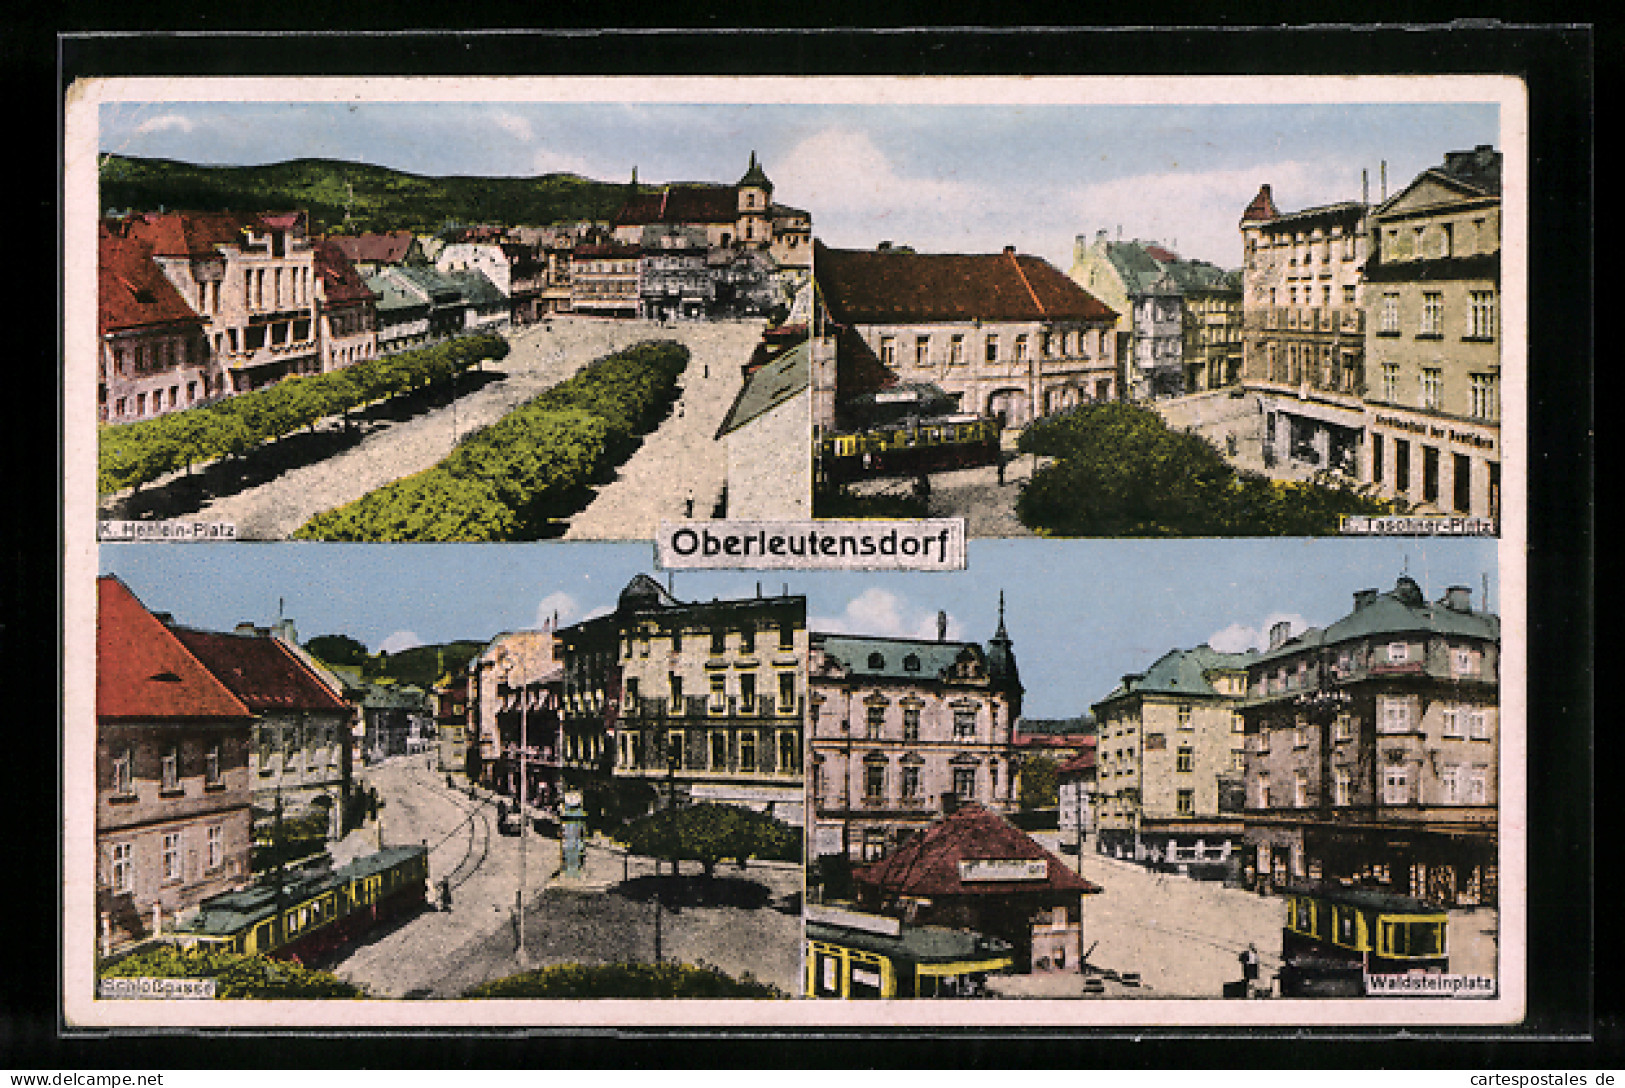 AK Oberleutensdorf / Litvinov, K. Henlein-Platz, E. Taschner-Platz, Schlossgasse, Waldsteinplatz  - Tschechische Republik